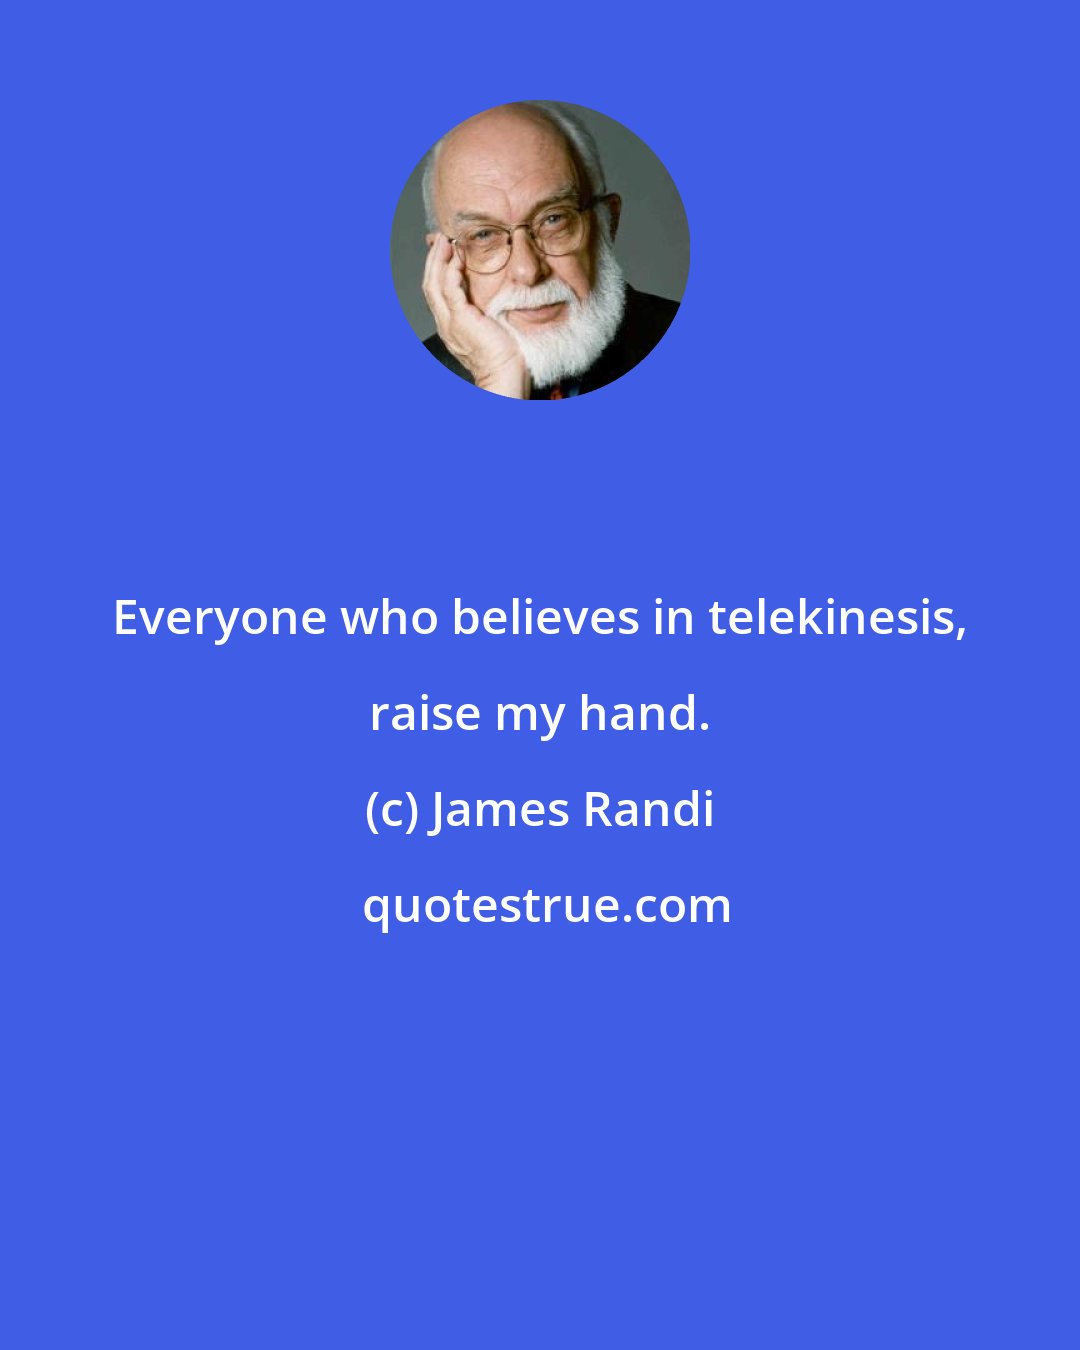 James Randi: Everyone who believes in telekinesis, raise my hand.